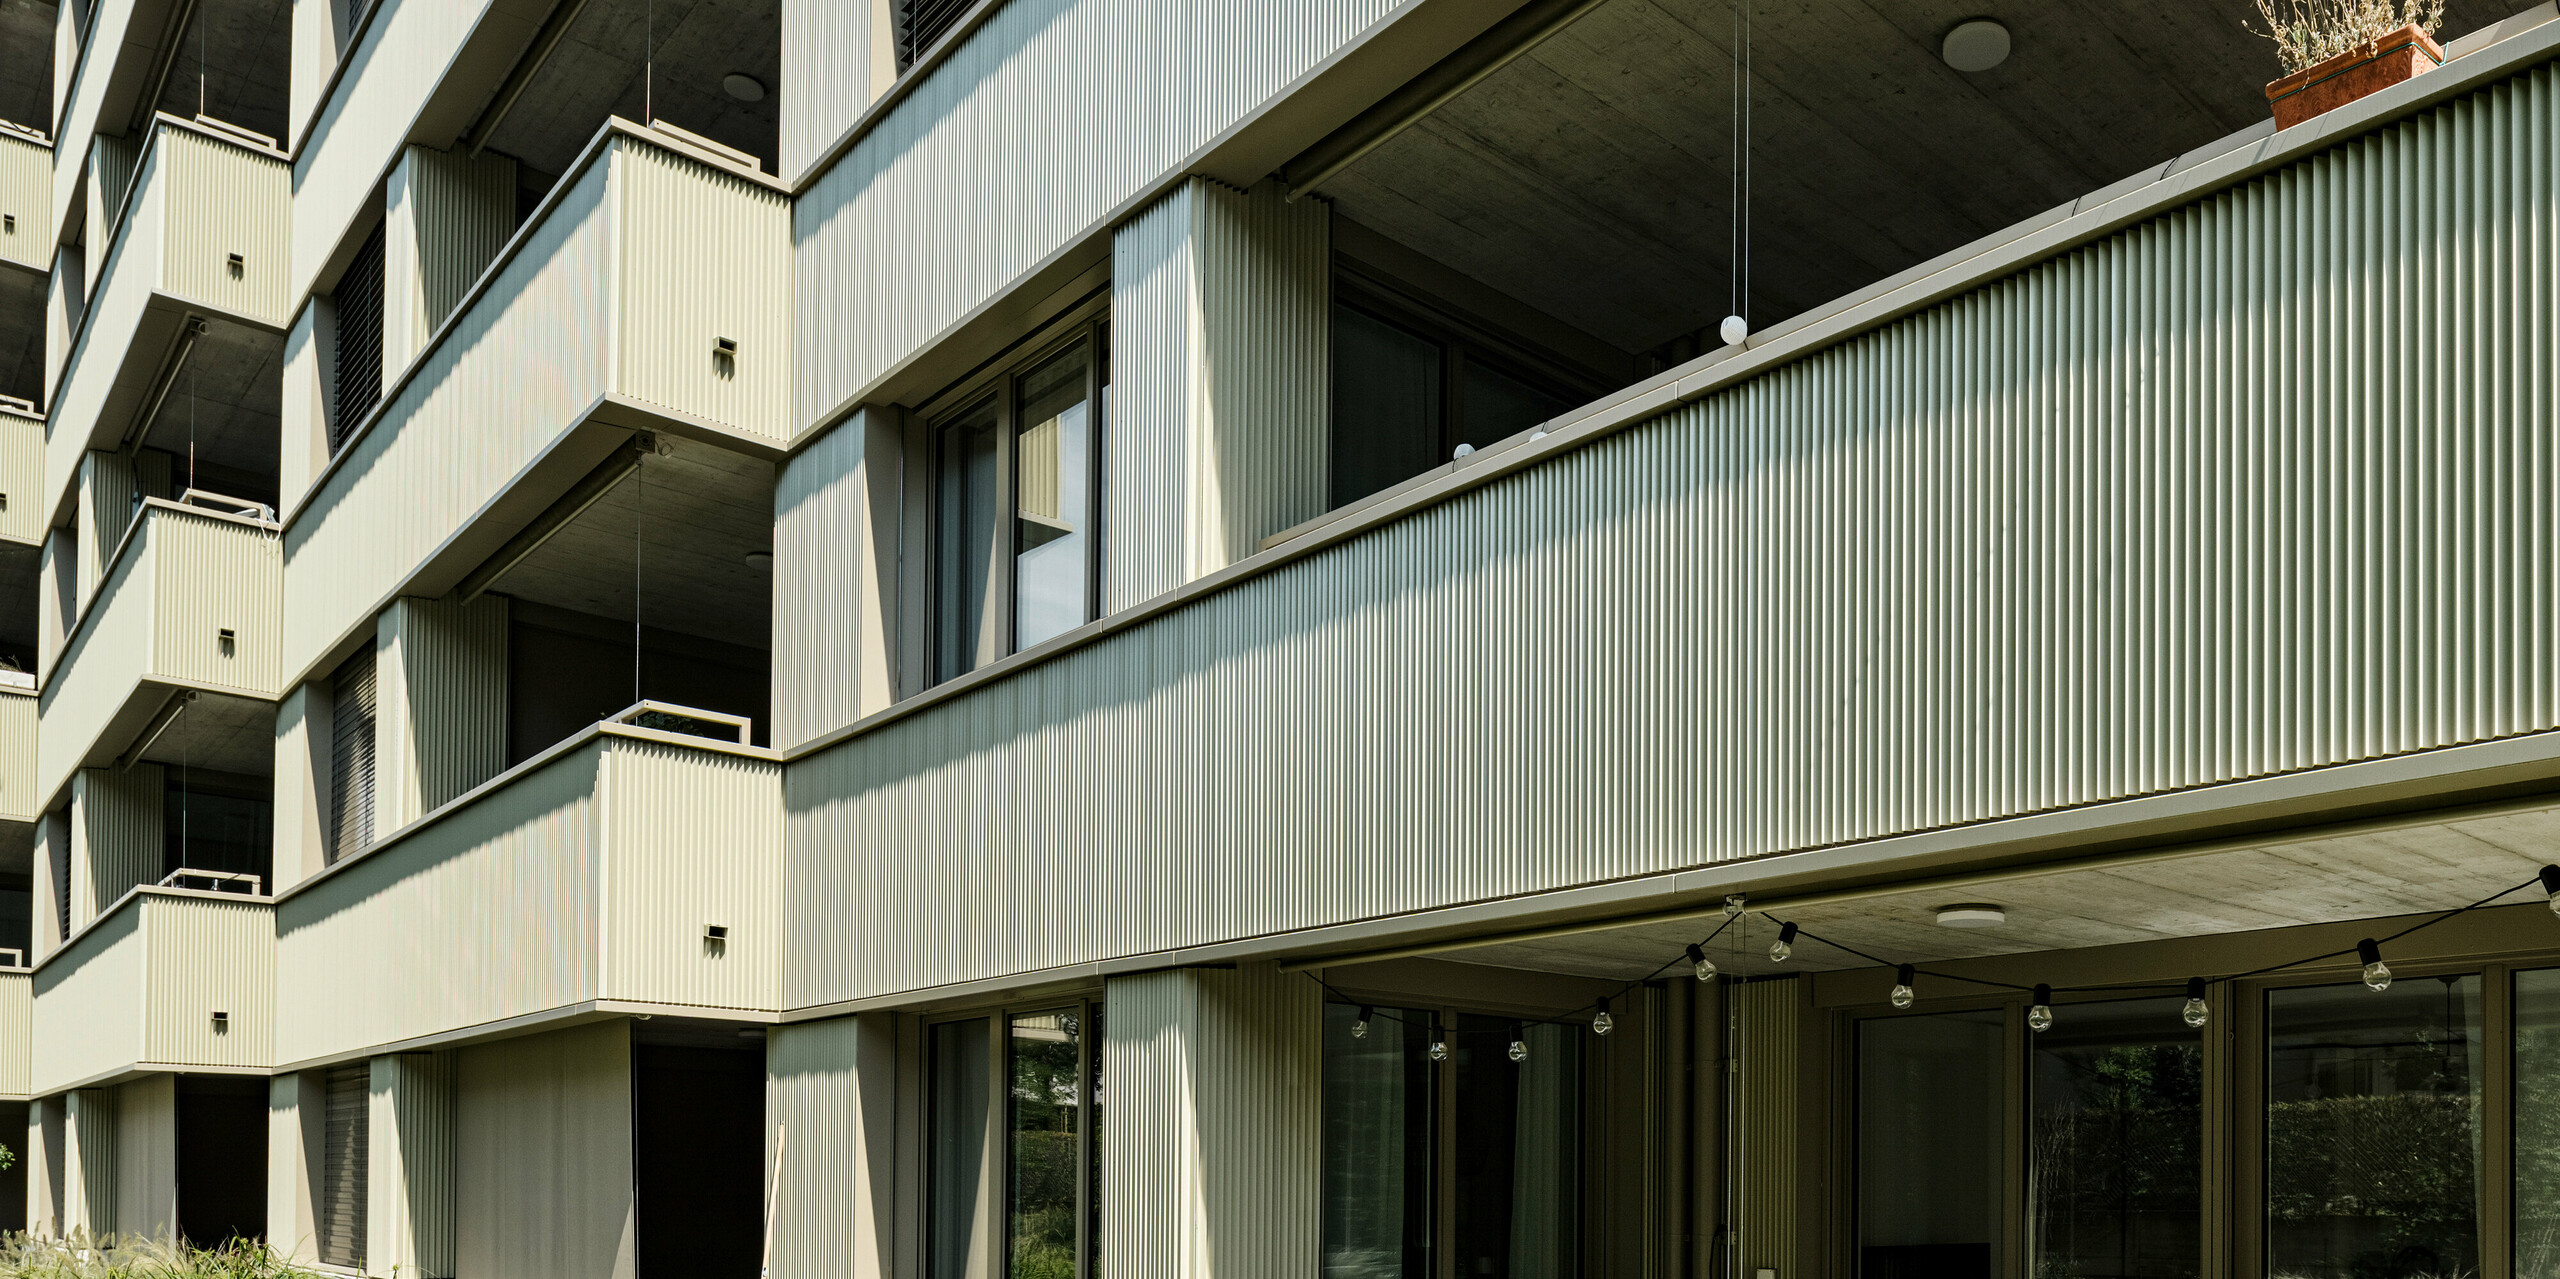 Sodobna stanovanjska stavba "Stetterhaus" v soseski Altstetten obdaja edinstvena fasada z zobčastimi profili PREFA v posebni biserno kovinski barvi.